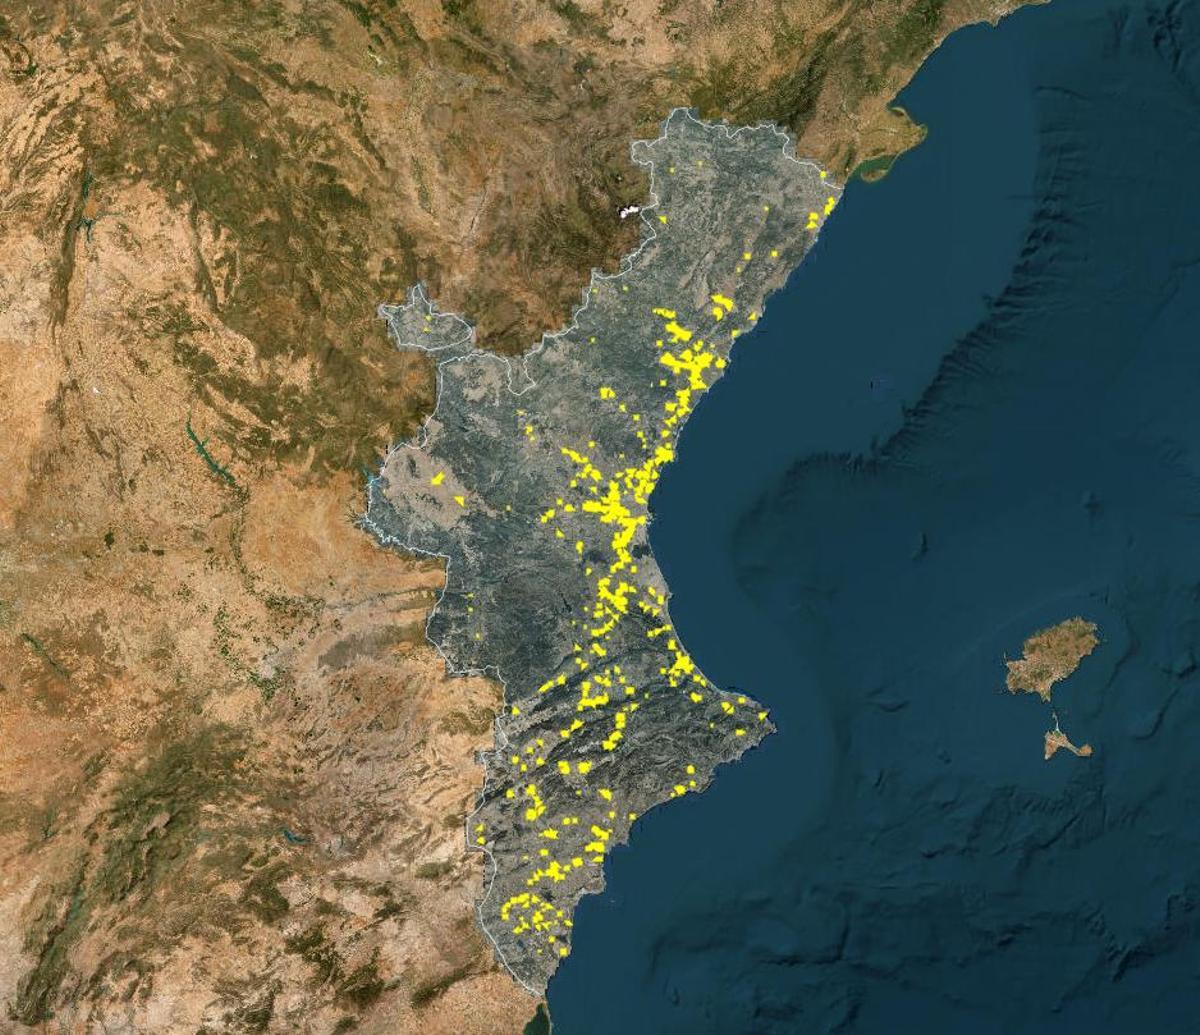 Mapa de Suelo Industrial de la Comunitat Valenciana, elaborado por el Ivace.